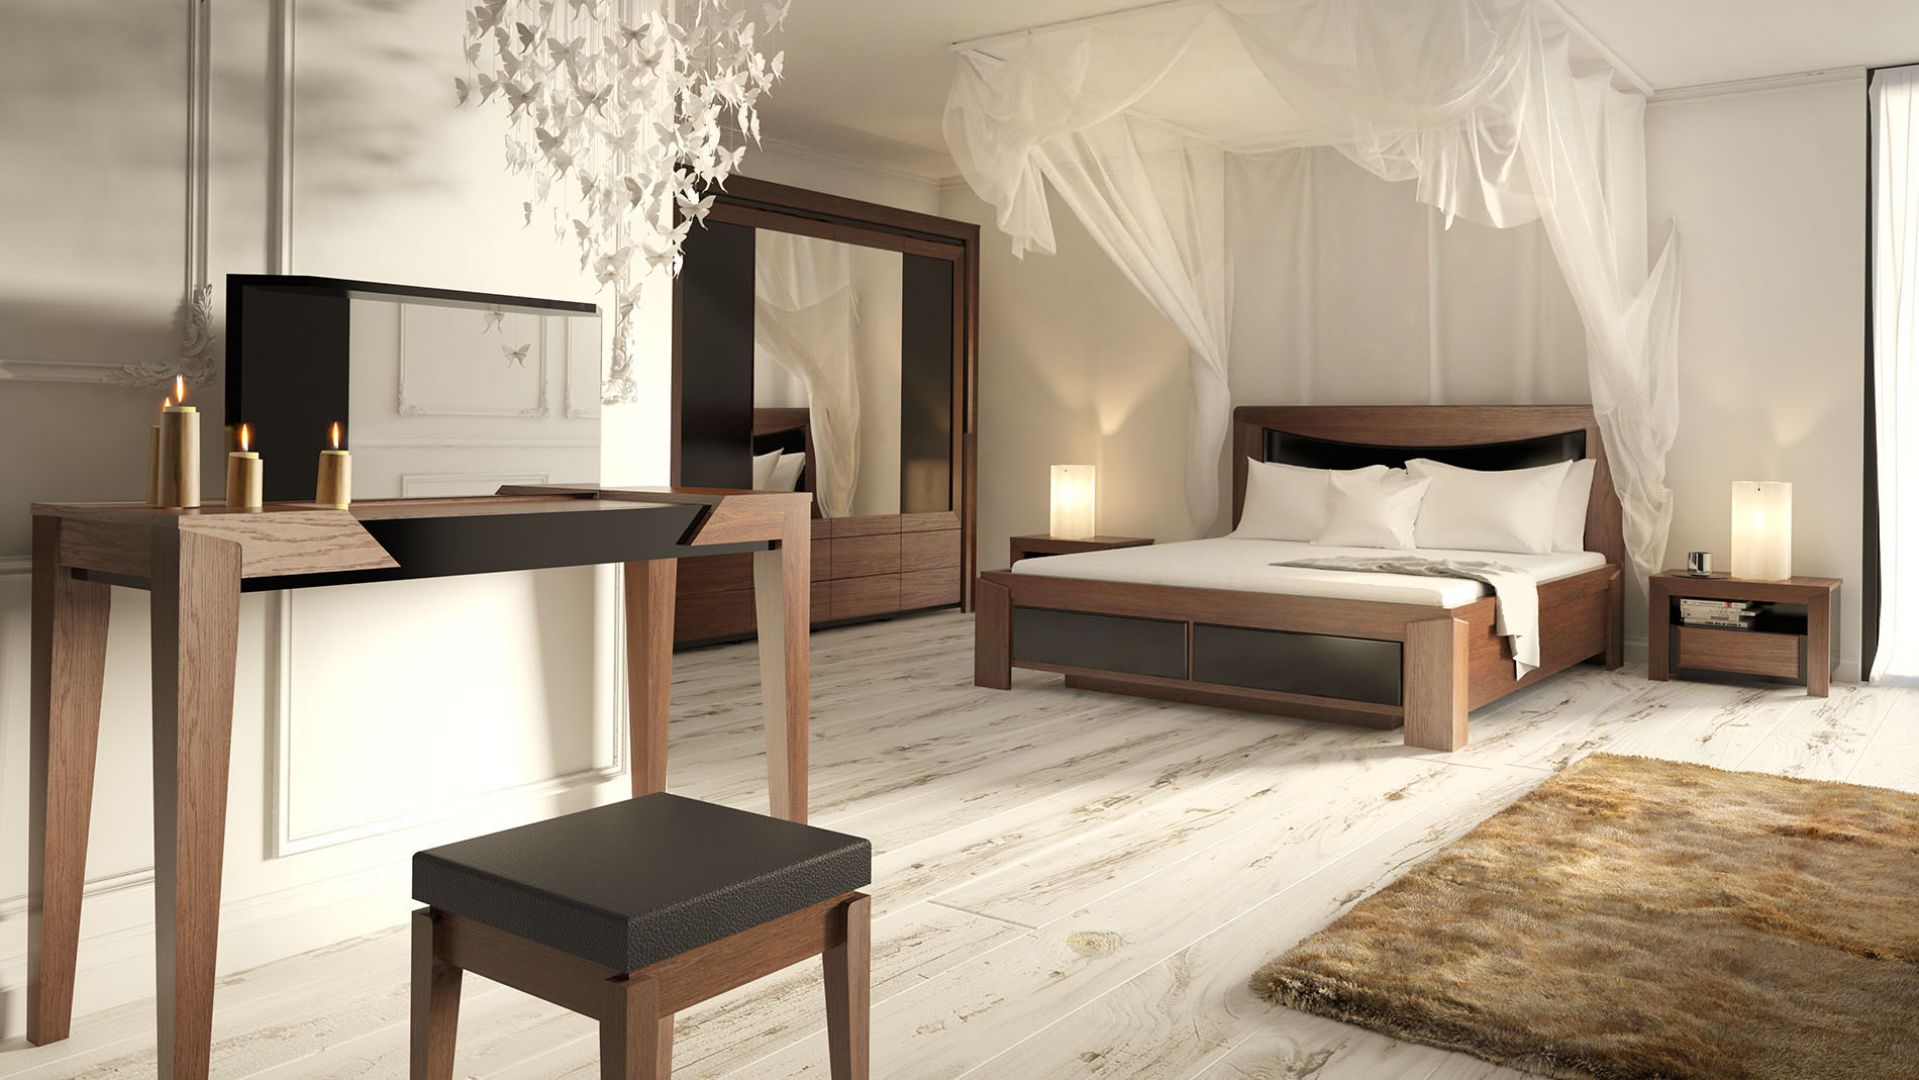 Sypialnia Sempre składa się z podwójnego łoża z zagłówkiem, któremu towarzyszą zgrabne szafki nocne, toaletki z lustrem na długich, wysmukłych nogach, tapicerowanego stołka i czterodrzwiowej szafy z lustrem. Fot. Mebin